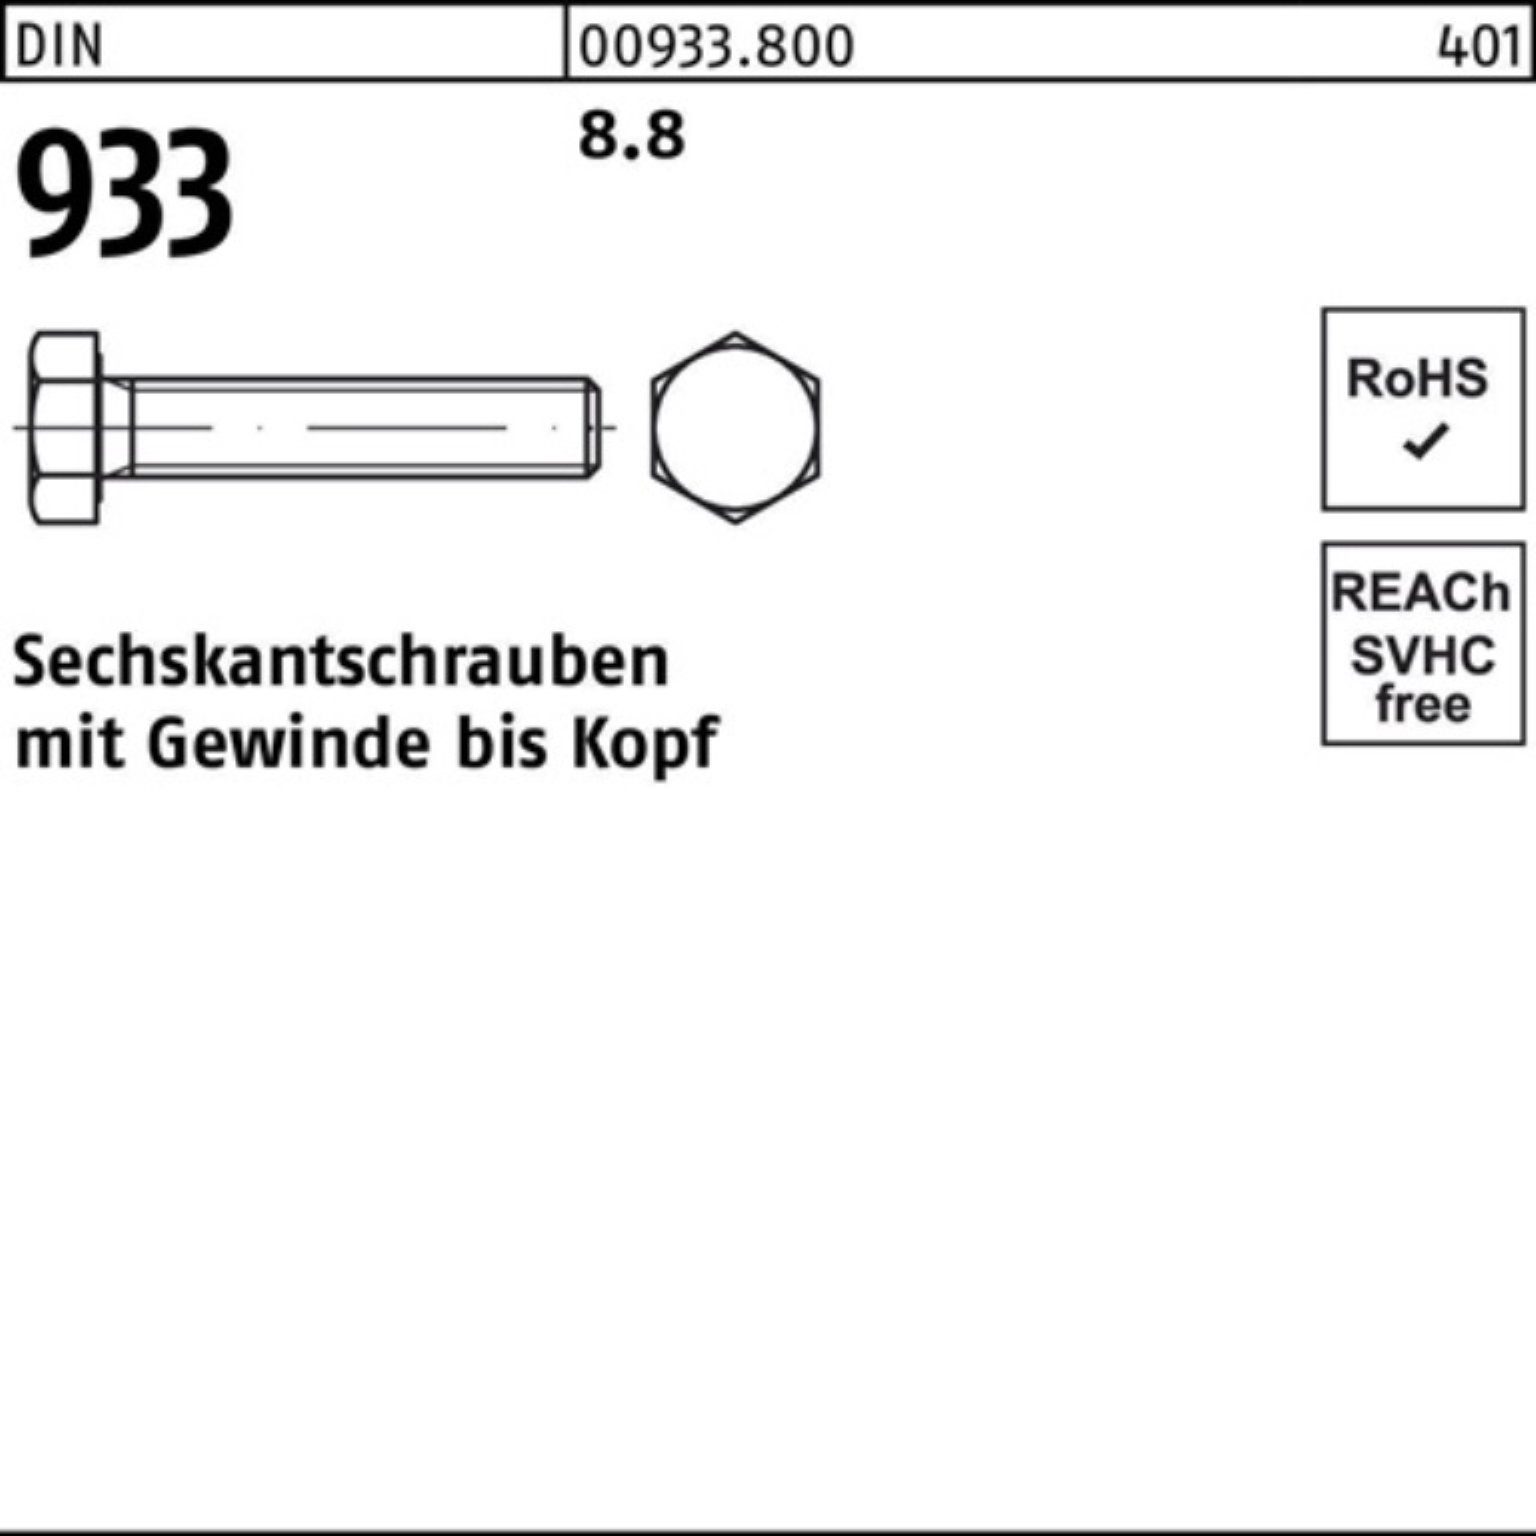 Reyher Sechskantschraube 8.8 M30x Pack 933 VG 100er 933 Stück 230 1 DIN Sechskantschraube DIN